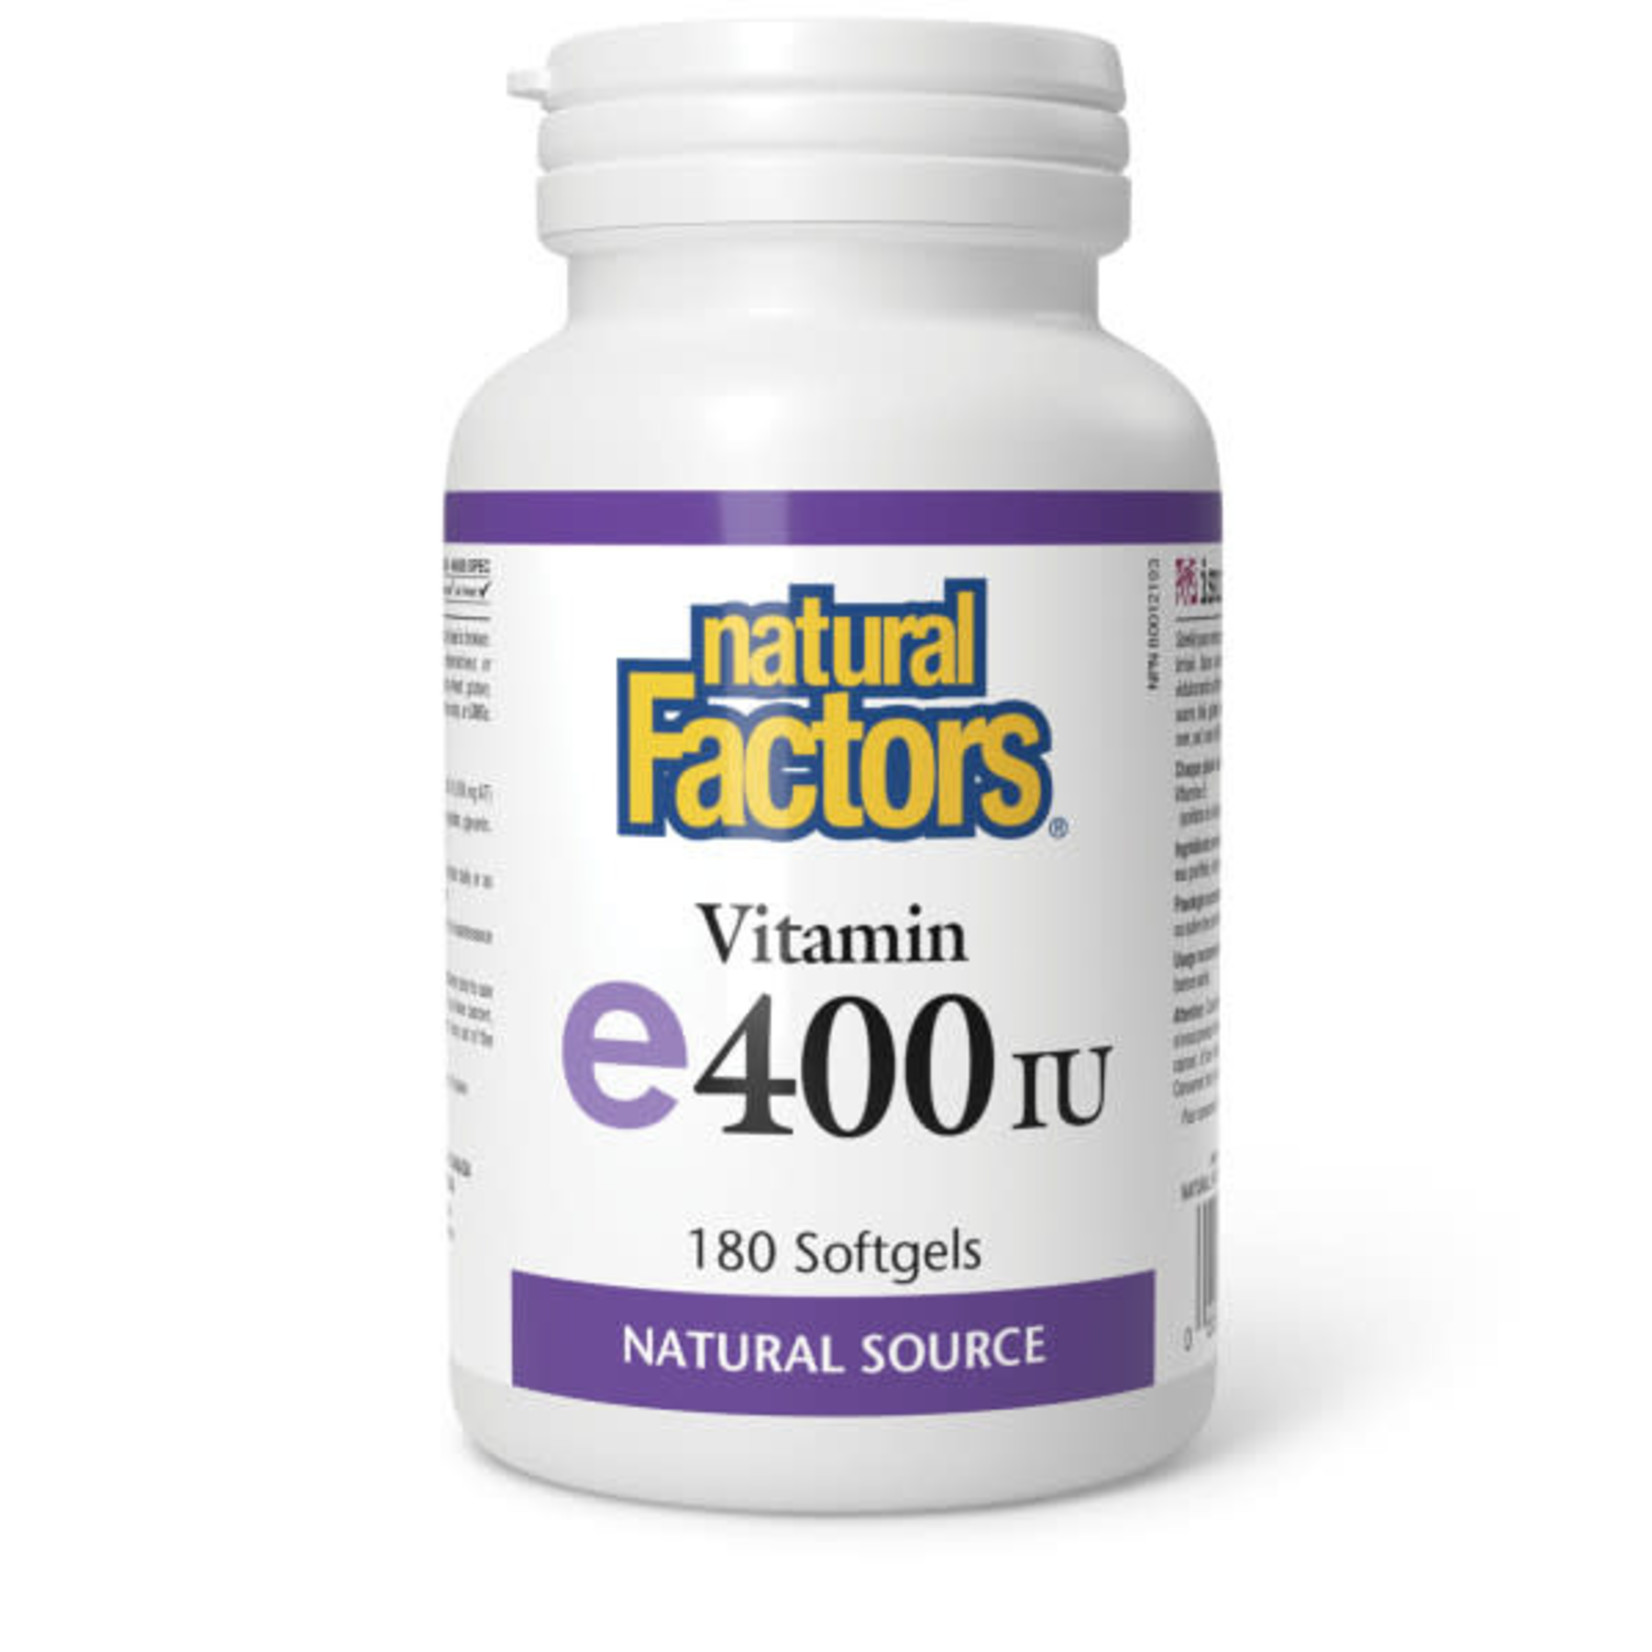 NATURAL FACTORS NATURAL FACTORS VITAMIN E 400IU 180 SOFTGELS